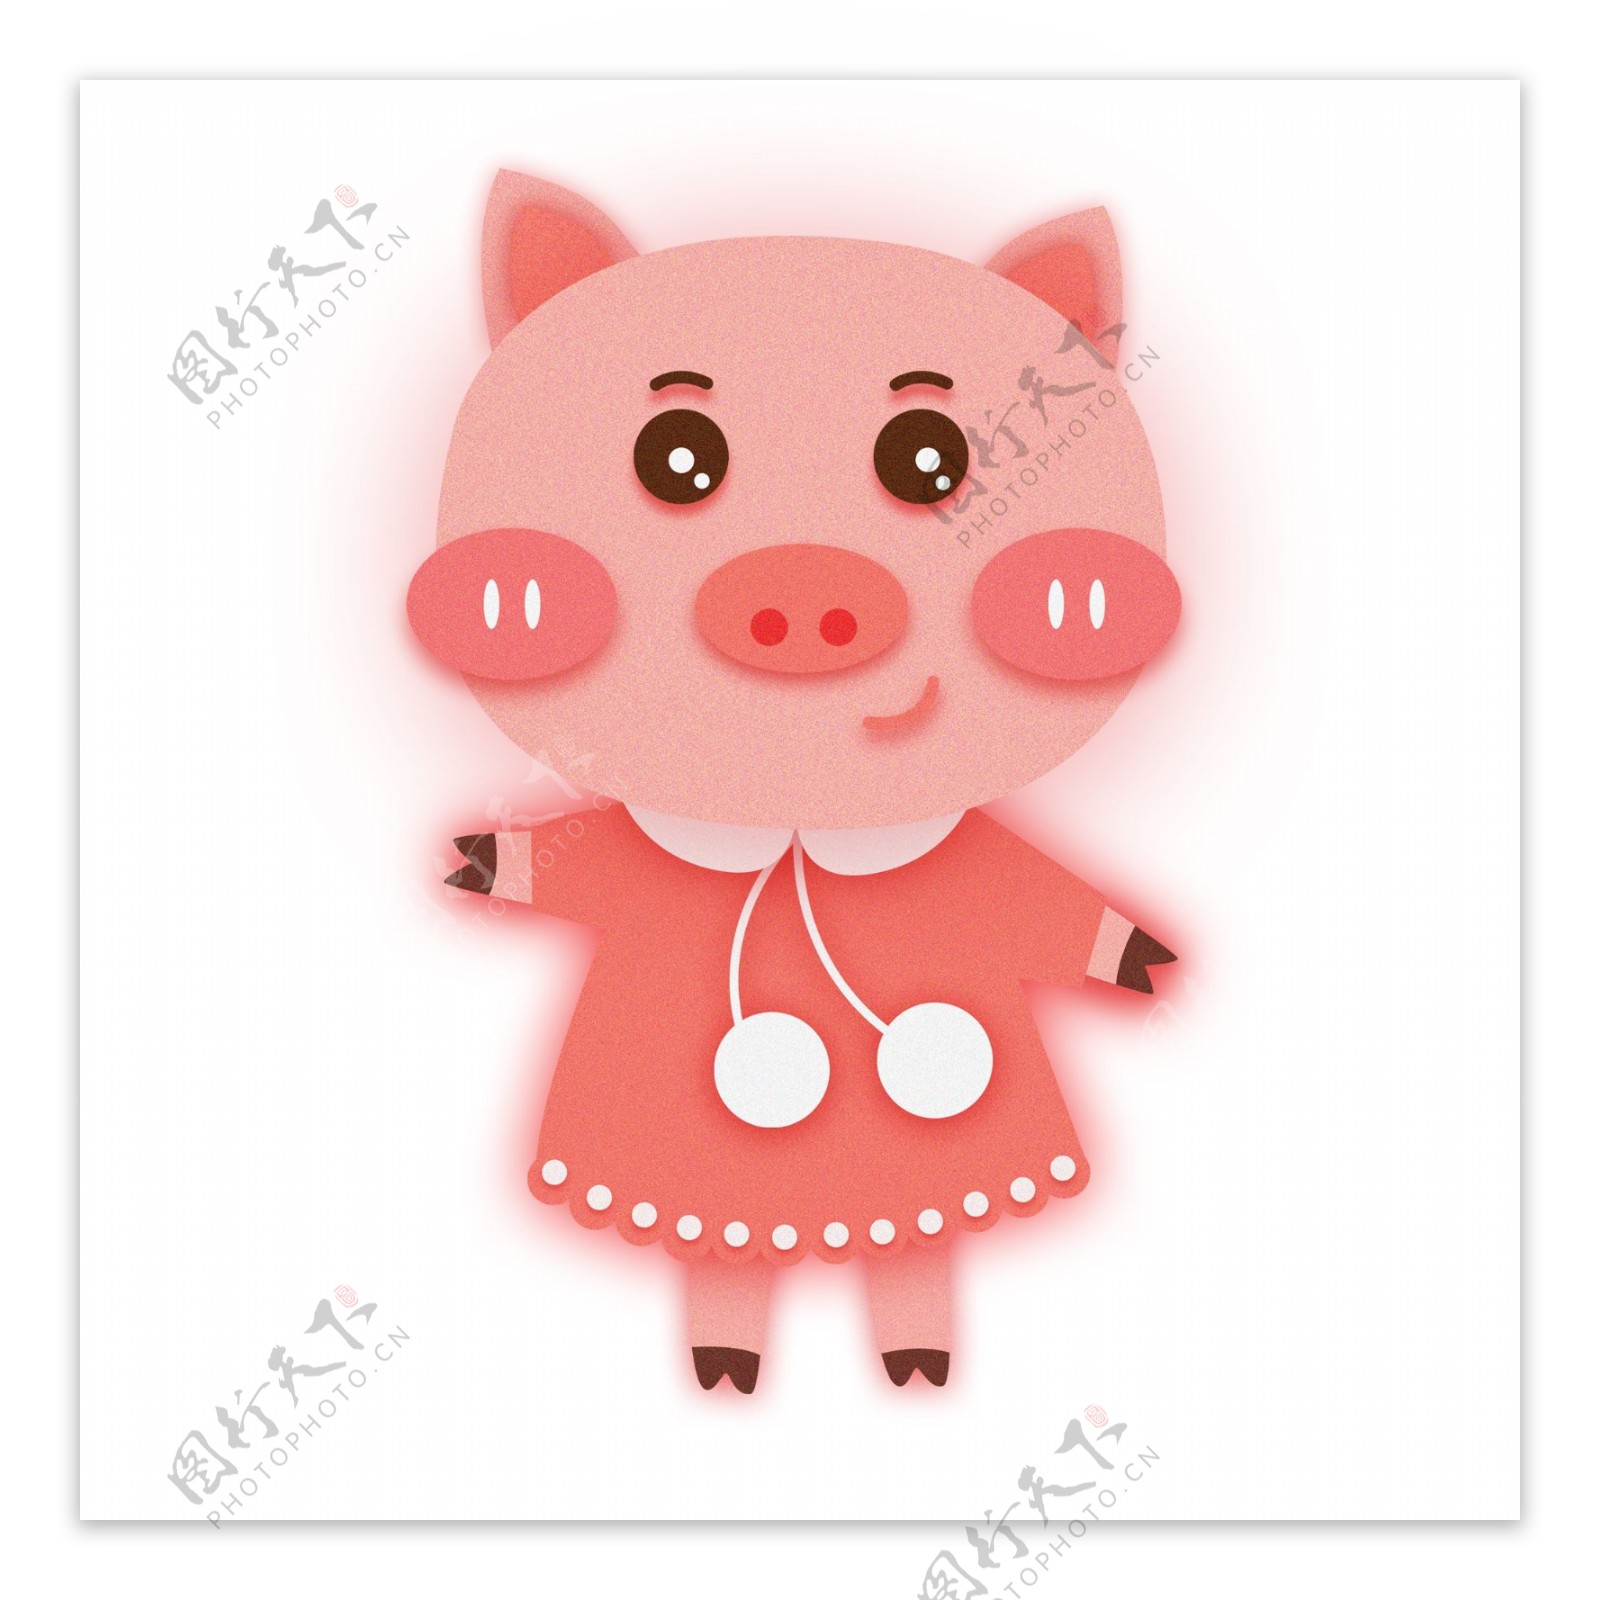 可爱粉色2019猪小妹形象元素设计